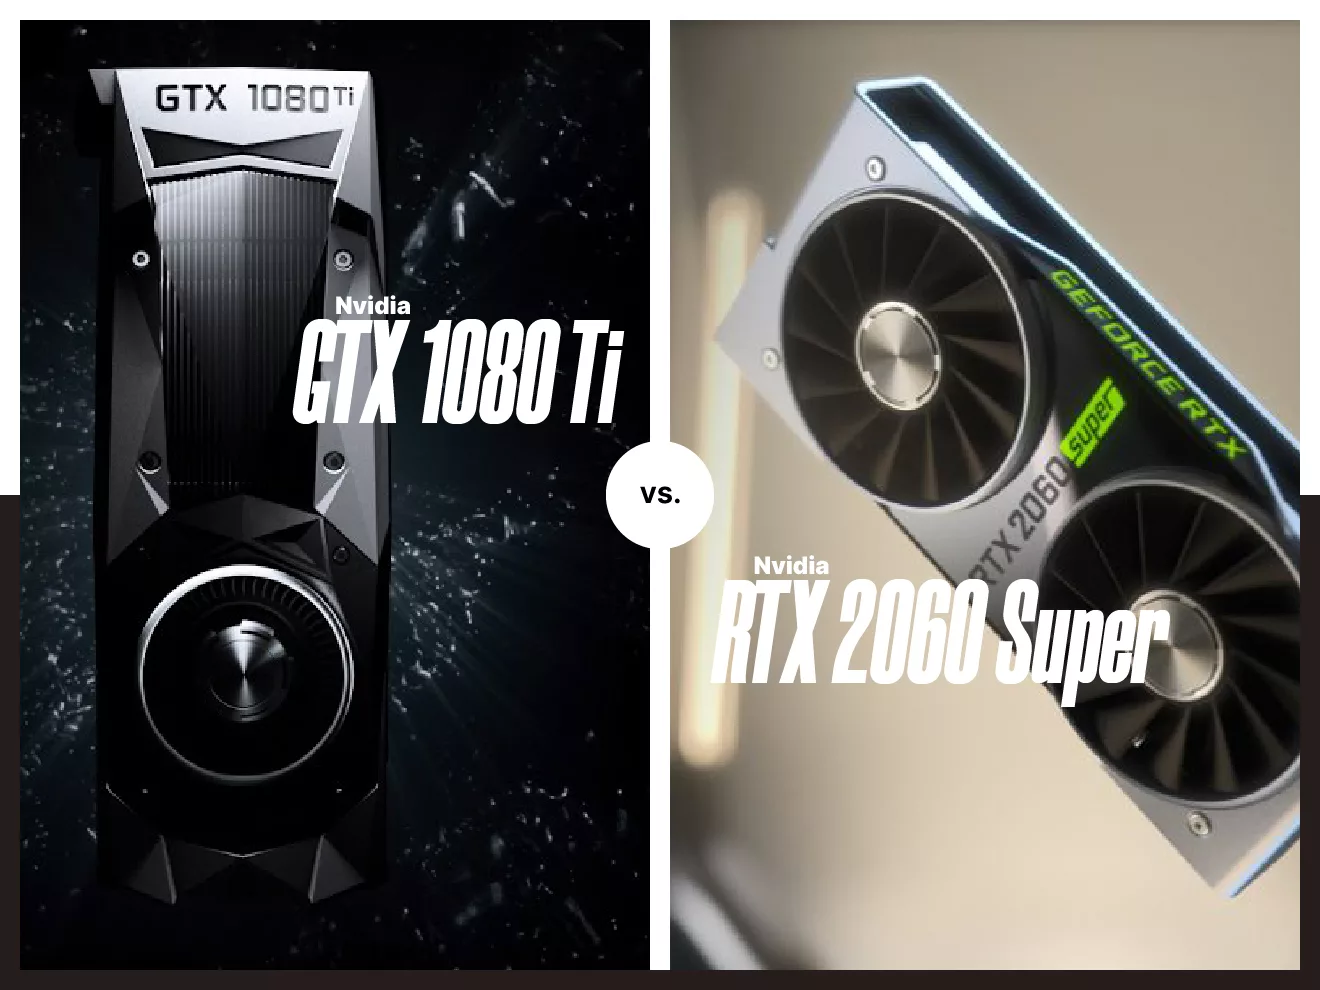 gtx 1080 ti vs. rtx 2060 super